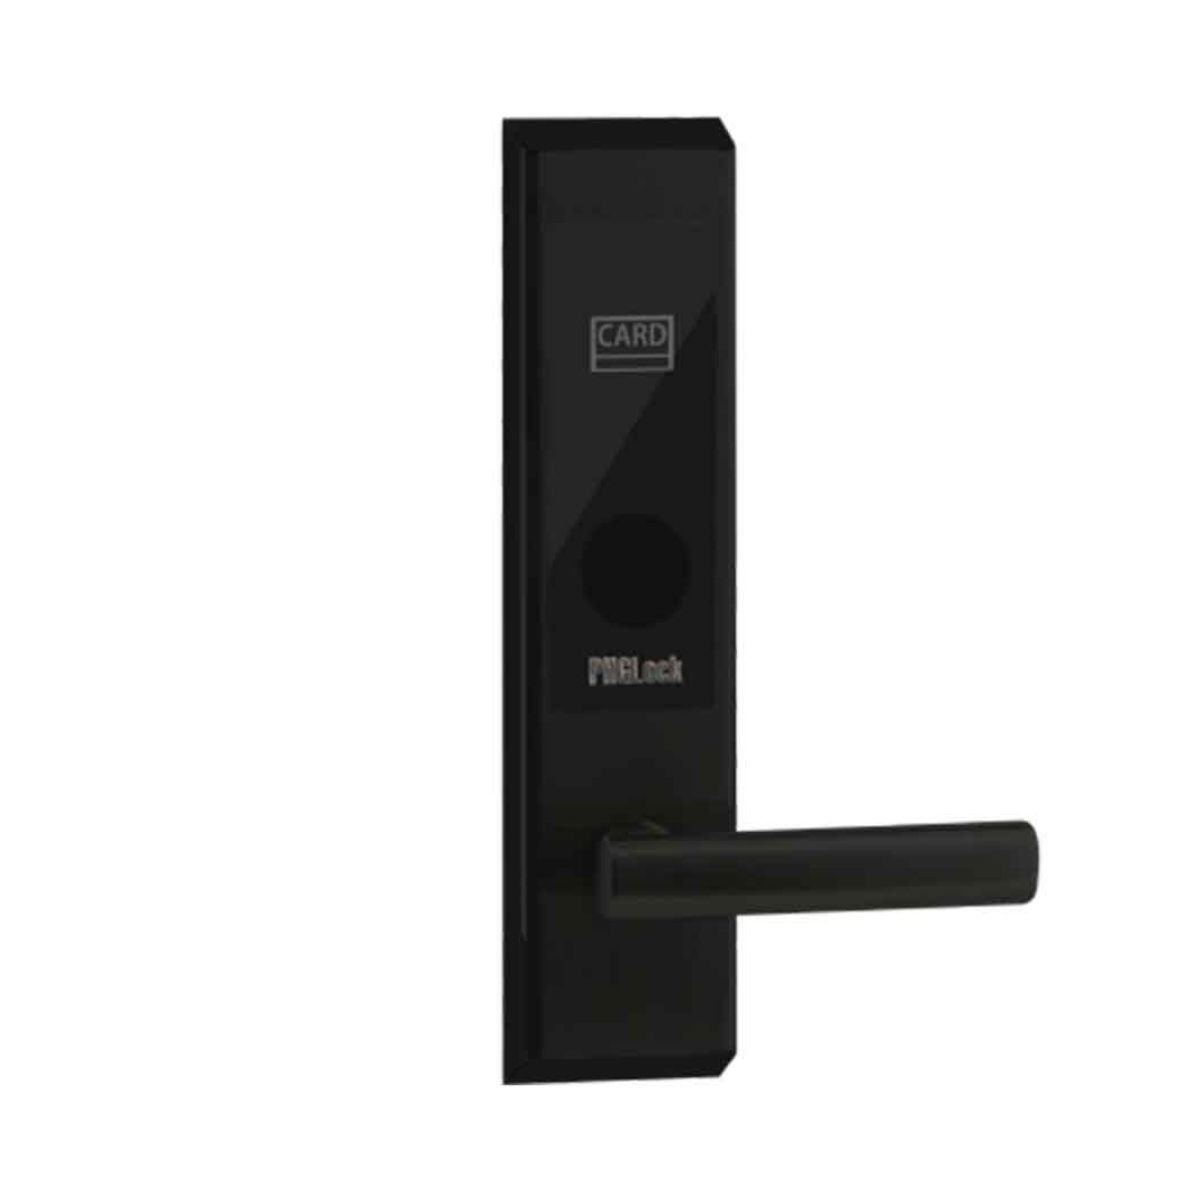 Khóa cửa thẻ từ cho khách sạn PHGLock RF7203 màu đen, thẻ từ TM08 và chìa khóa cơ